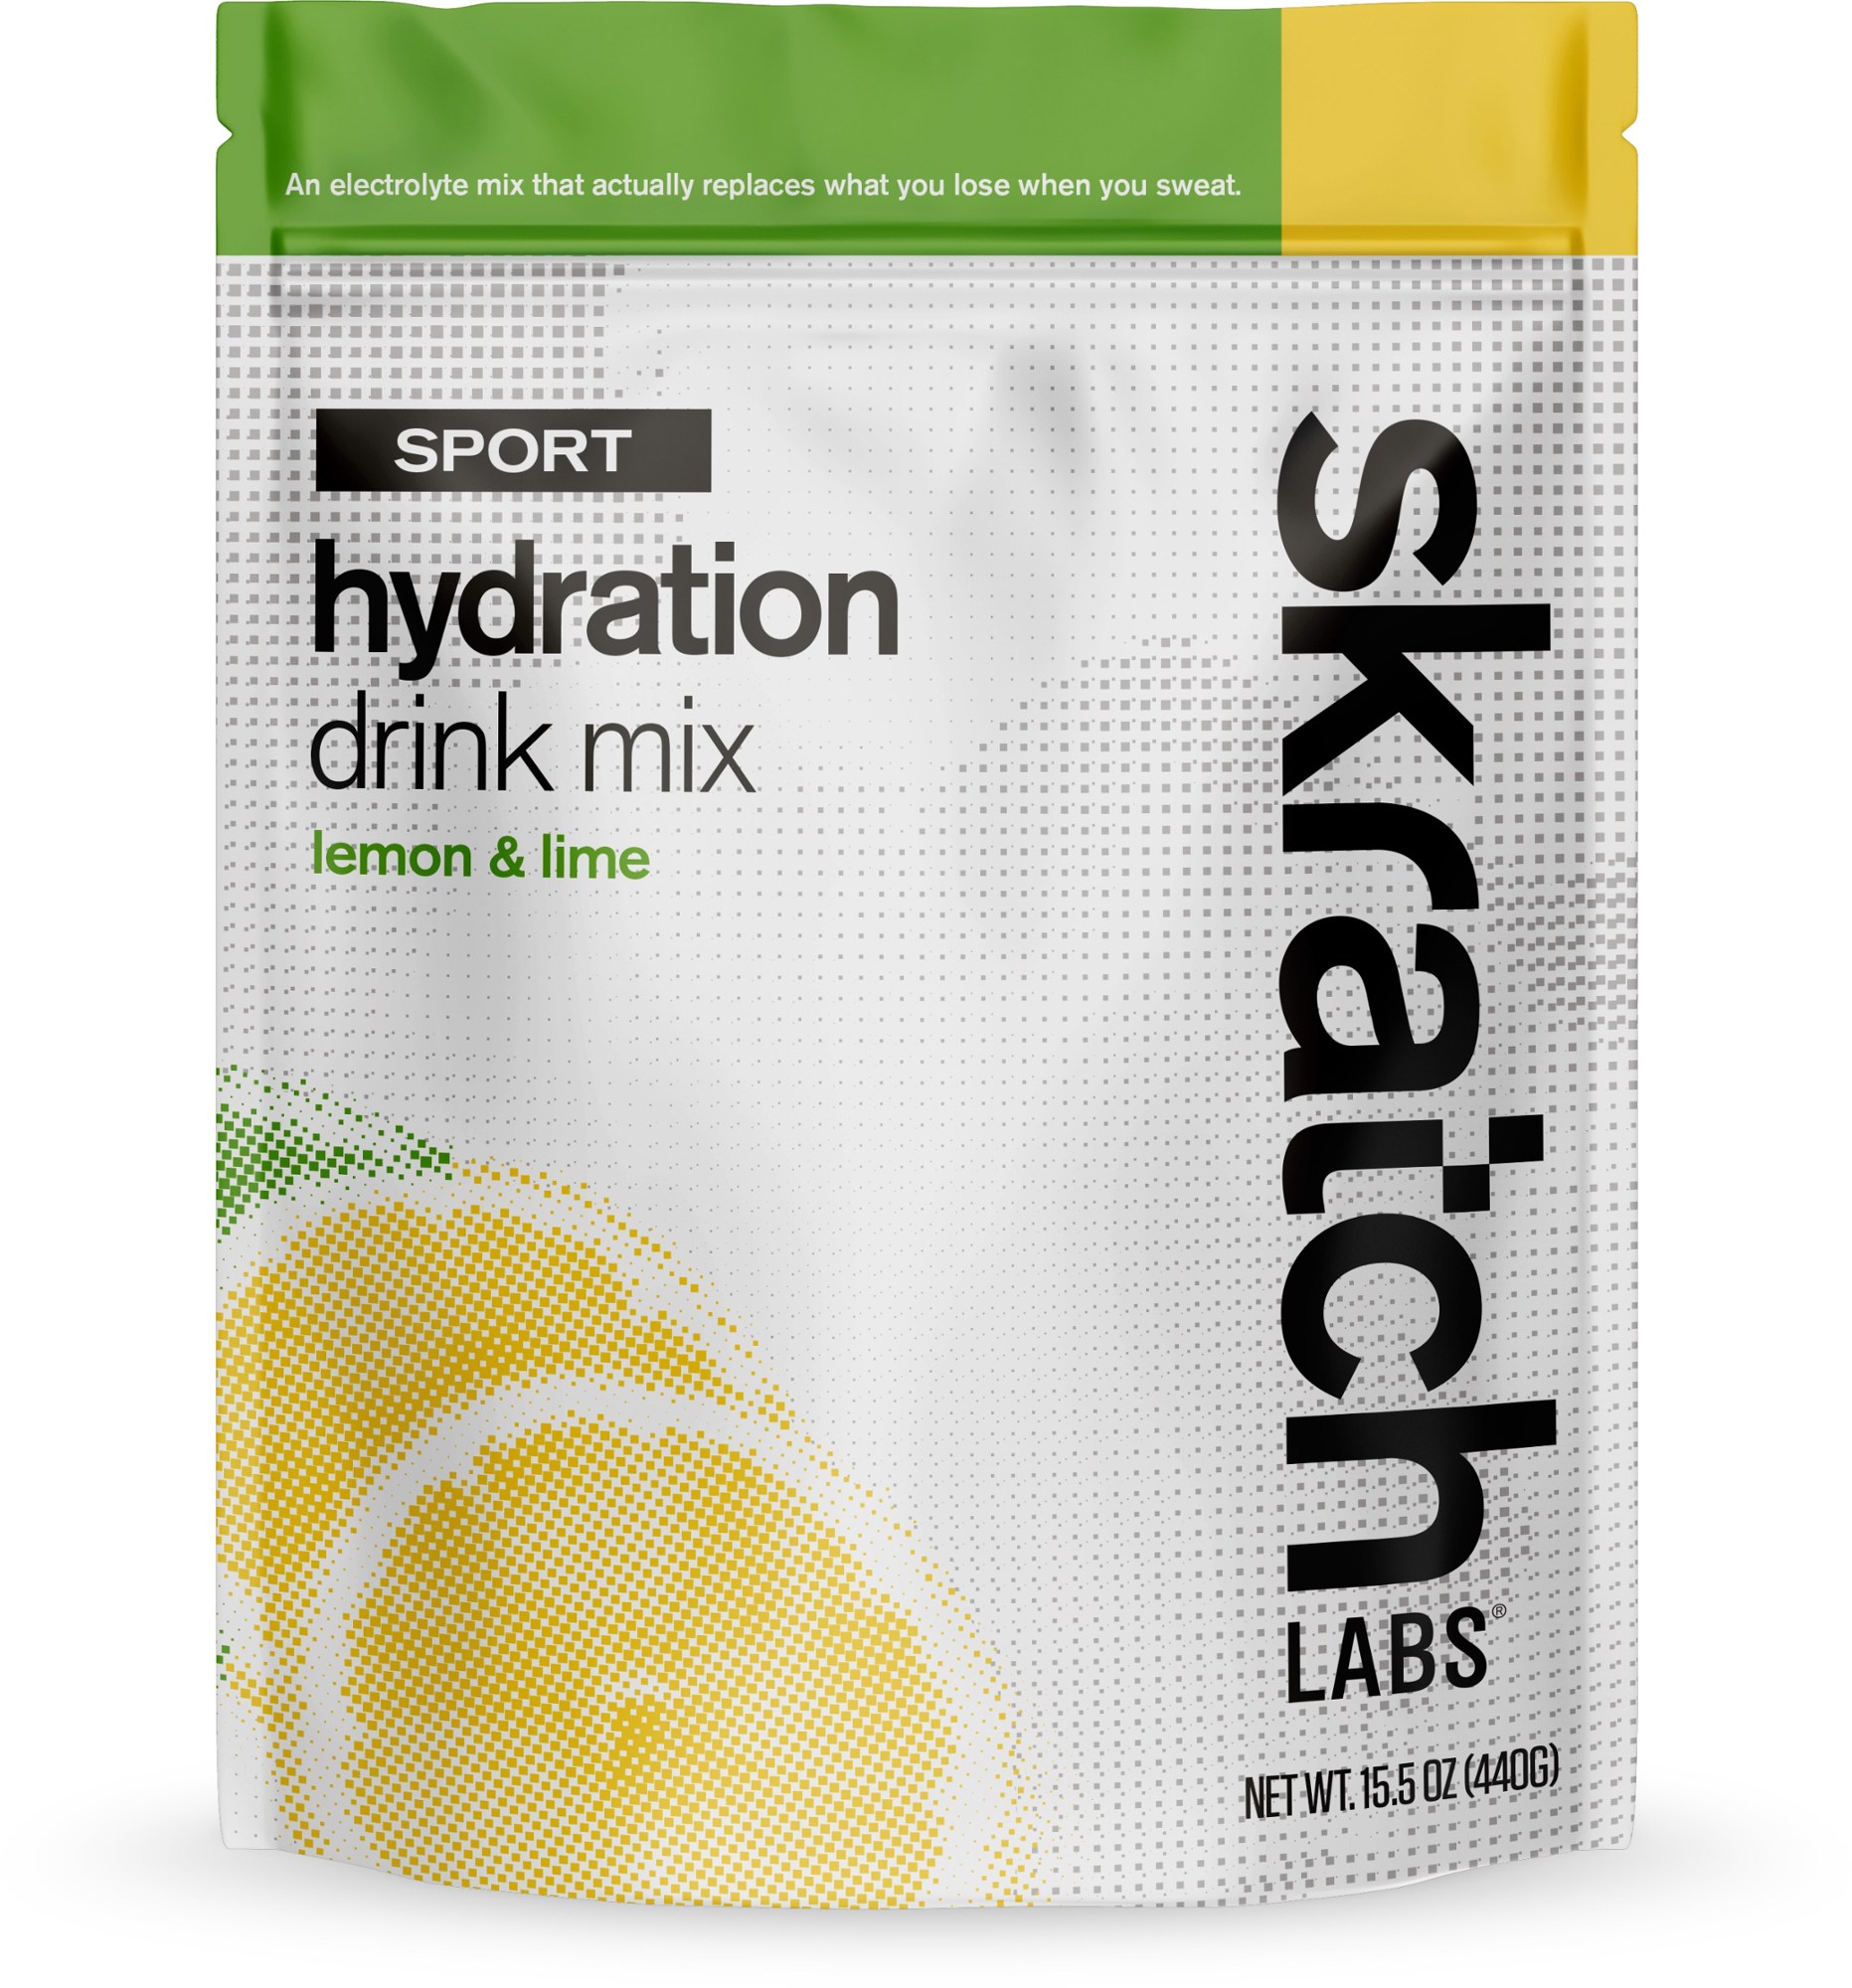 Смесь для спортивных гидратационных напитков - 20 порций Skratch Labs смесь электролитов force factor liquid labs energy для быстрого увлажнения манго и маргарита 20 стик пакетов по 8 г